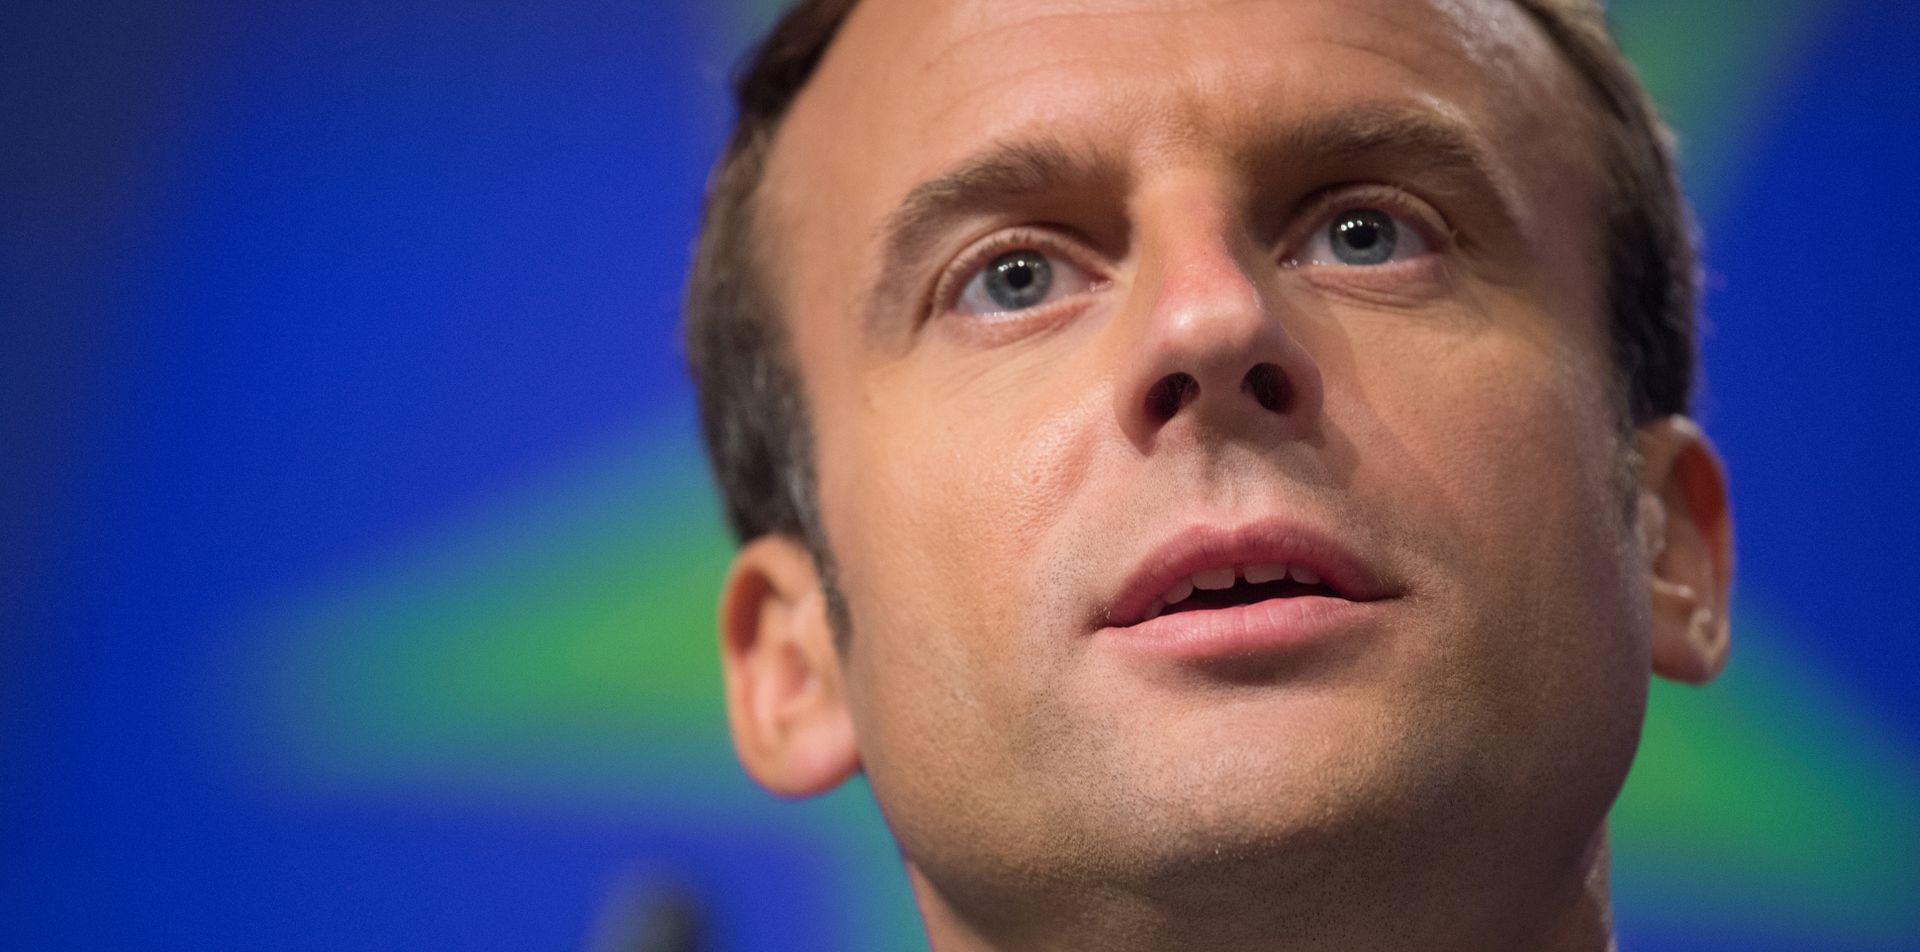 ‘Vođa klana Macron’: ako dopustim da se raspadne Europa bit ću odgovoran pred poviješću